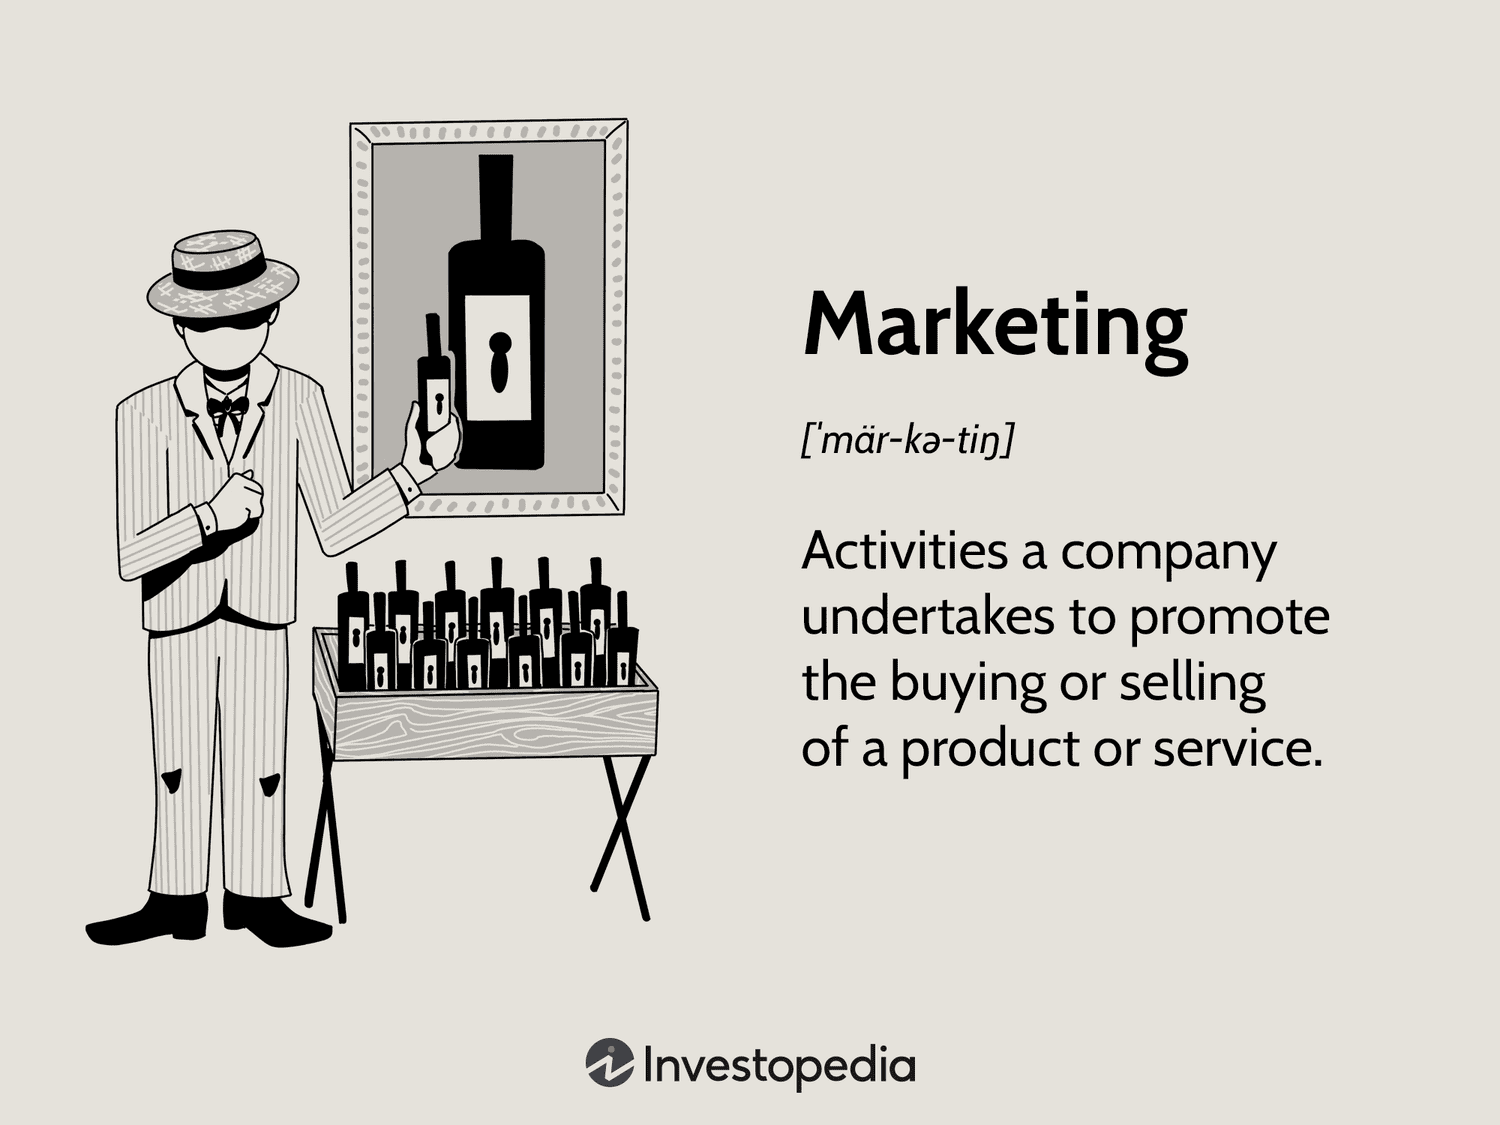 Định nghĩa của Investopedia về Marketing